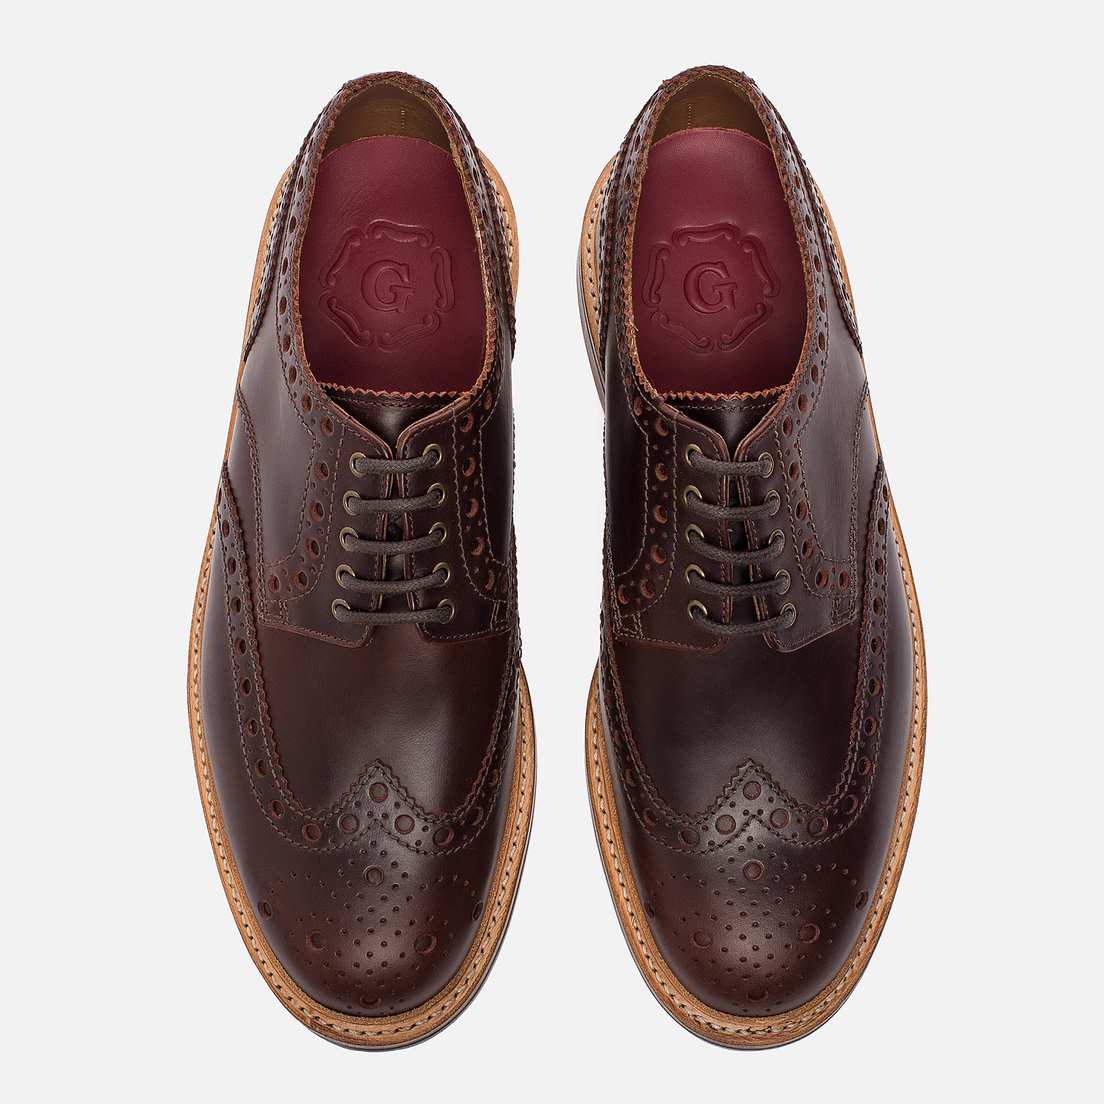 Grenson Мужские ботинки броги Archie Brogue Sole Leather